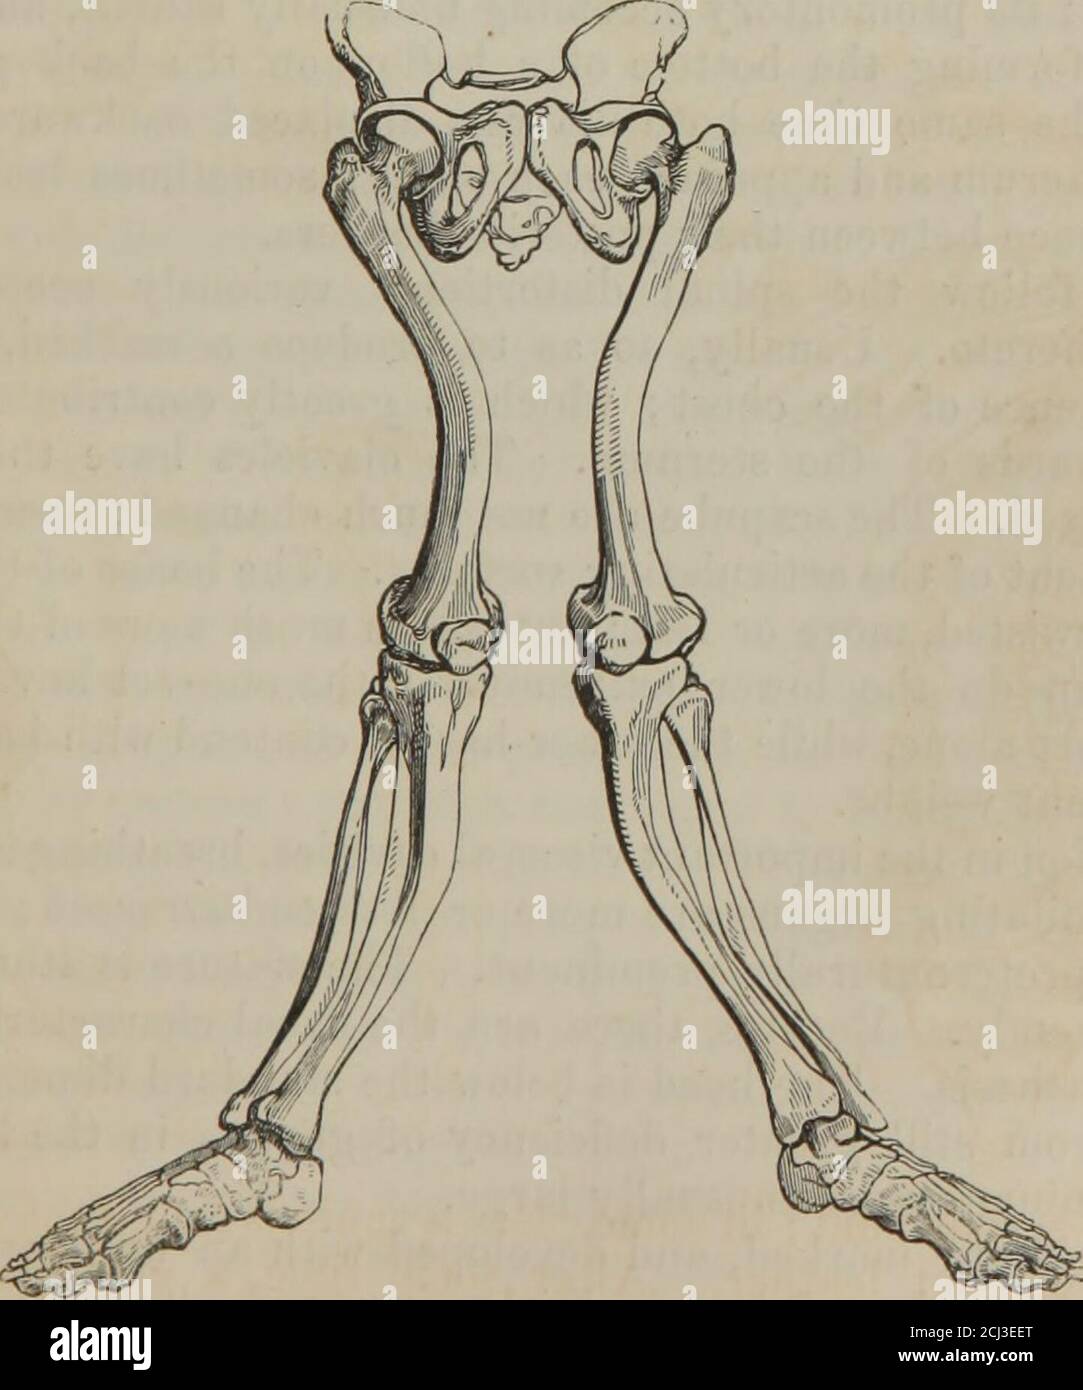 Les principes de la chirurgie . rin ou la gélatine de l'os. Et, outre cela,  l'arrêt comparatif de la croissance a lieu, en particulier dans les membres  inférieurs. Parfois, l'os entier